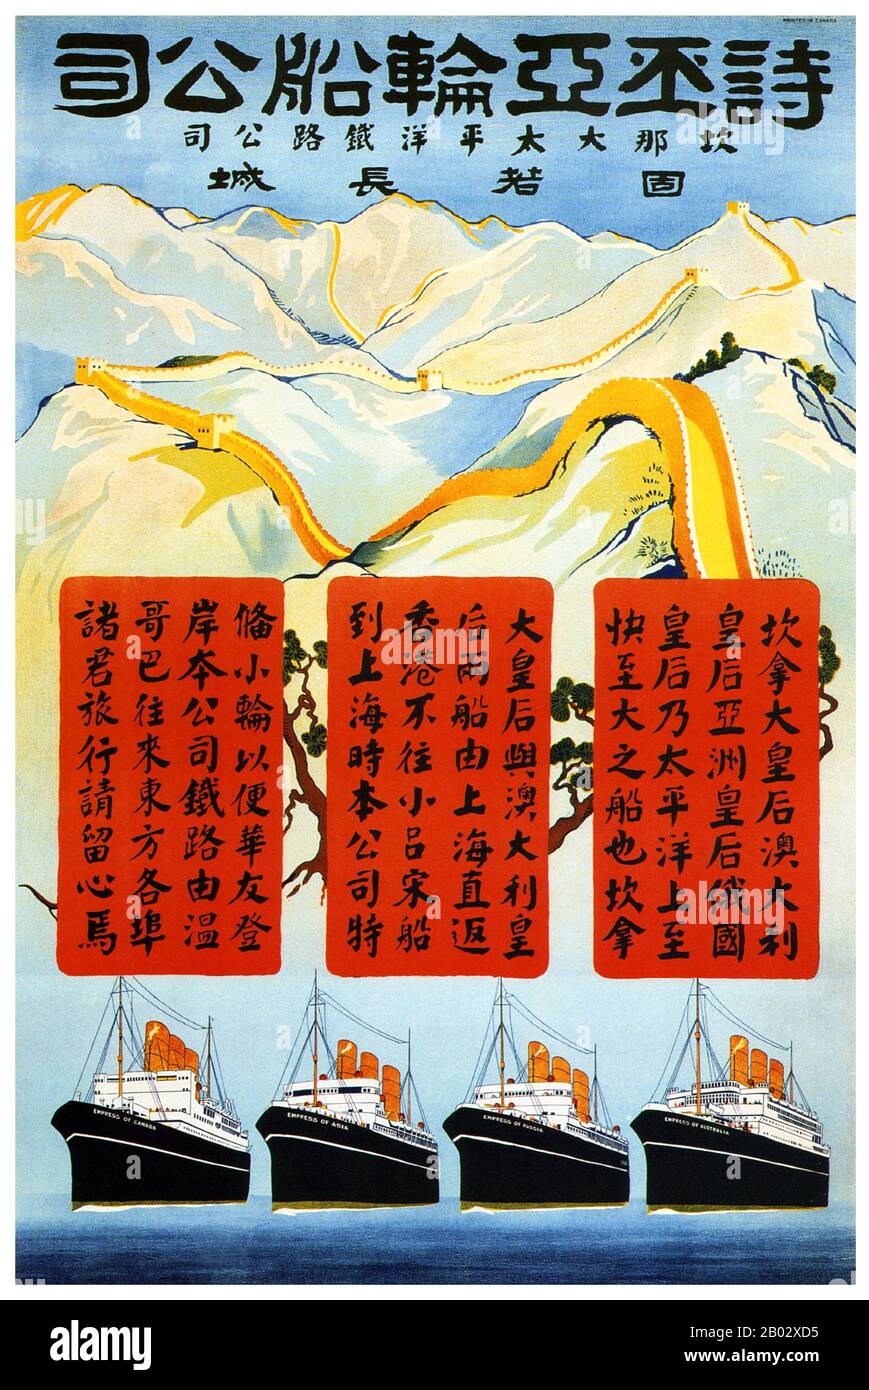 Chine : affiche sur les bateaux à vapeur Asie-Pacifique présentant la Grande Muraille de Chine et répertoriant, au-dessus de quatre navires à vapeur, une liste de destinations en chinois traditionnel. Banque D'Images